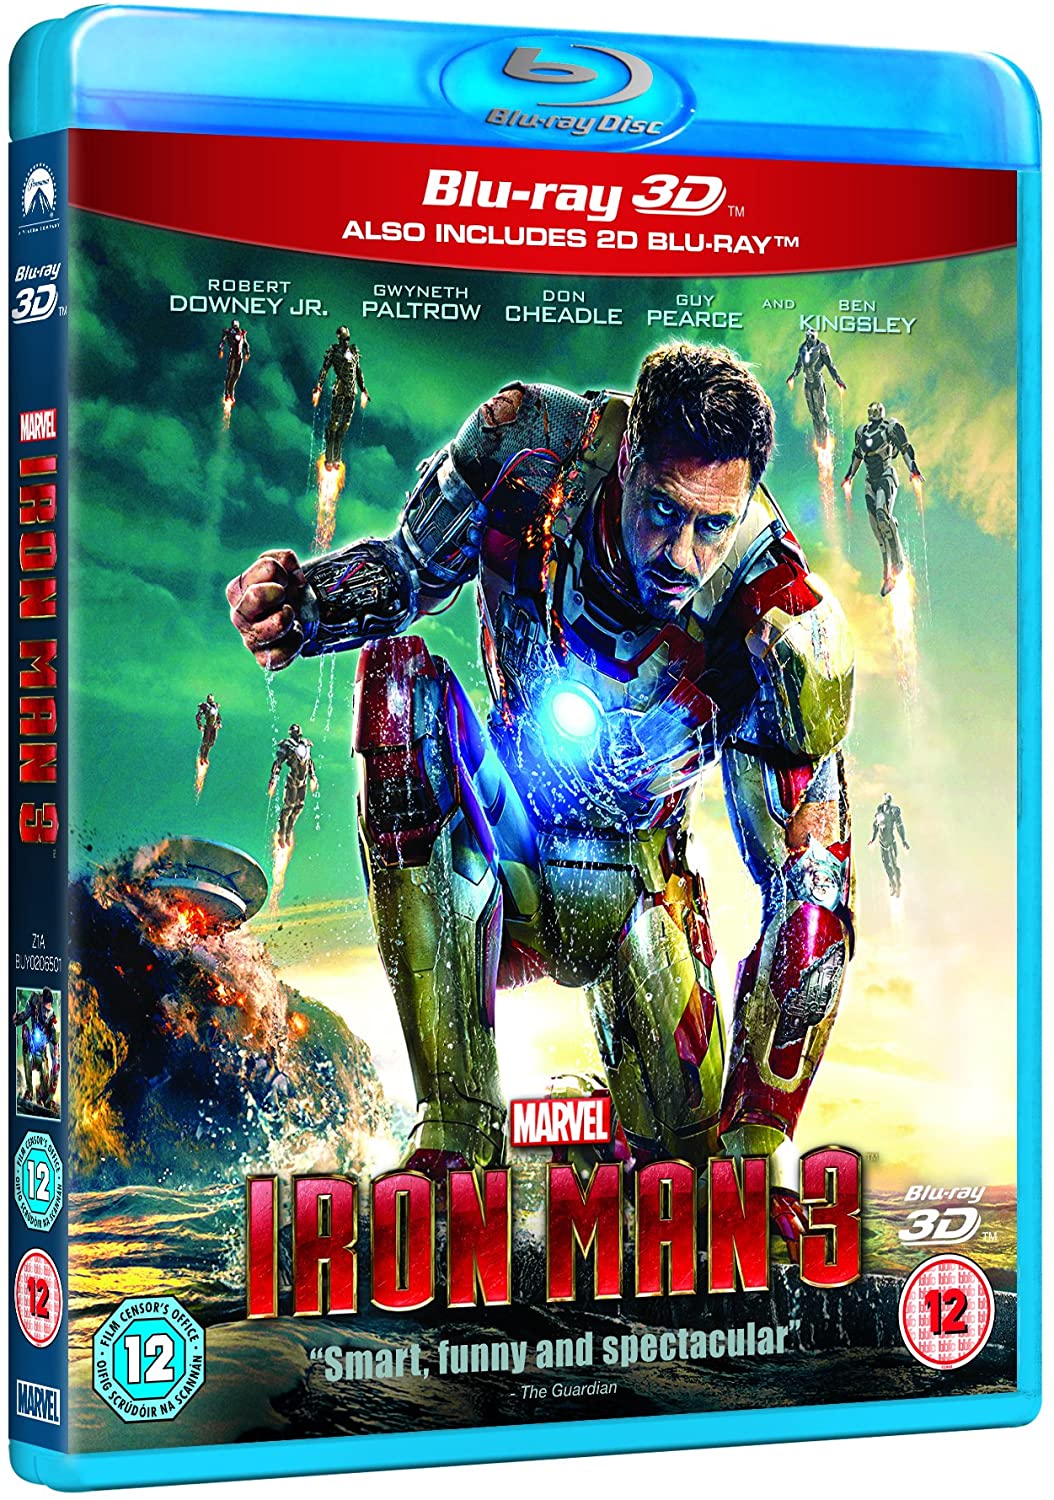 Iron Man 3 [Blu-ray 3D + Blu-ray] [Región libre]